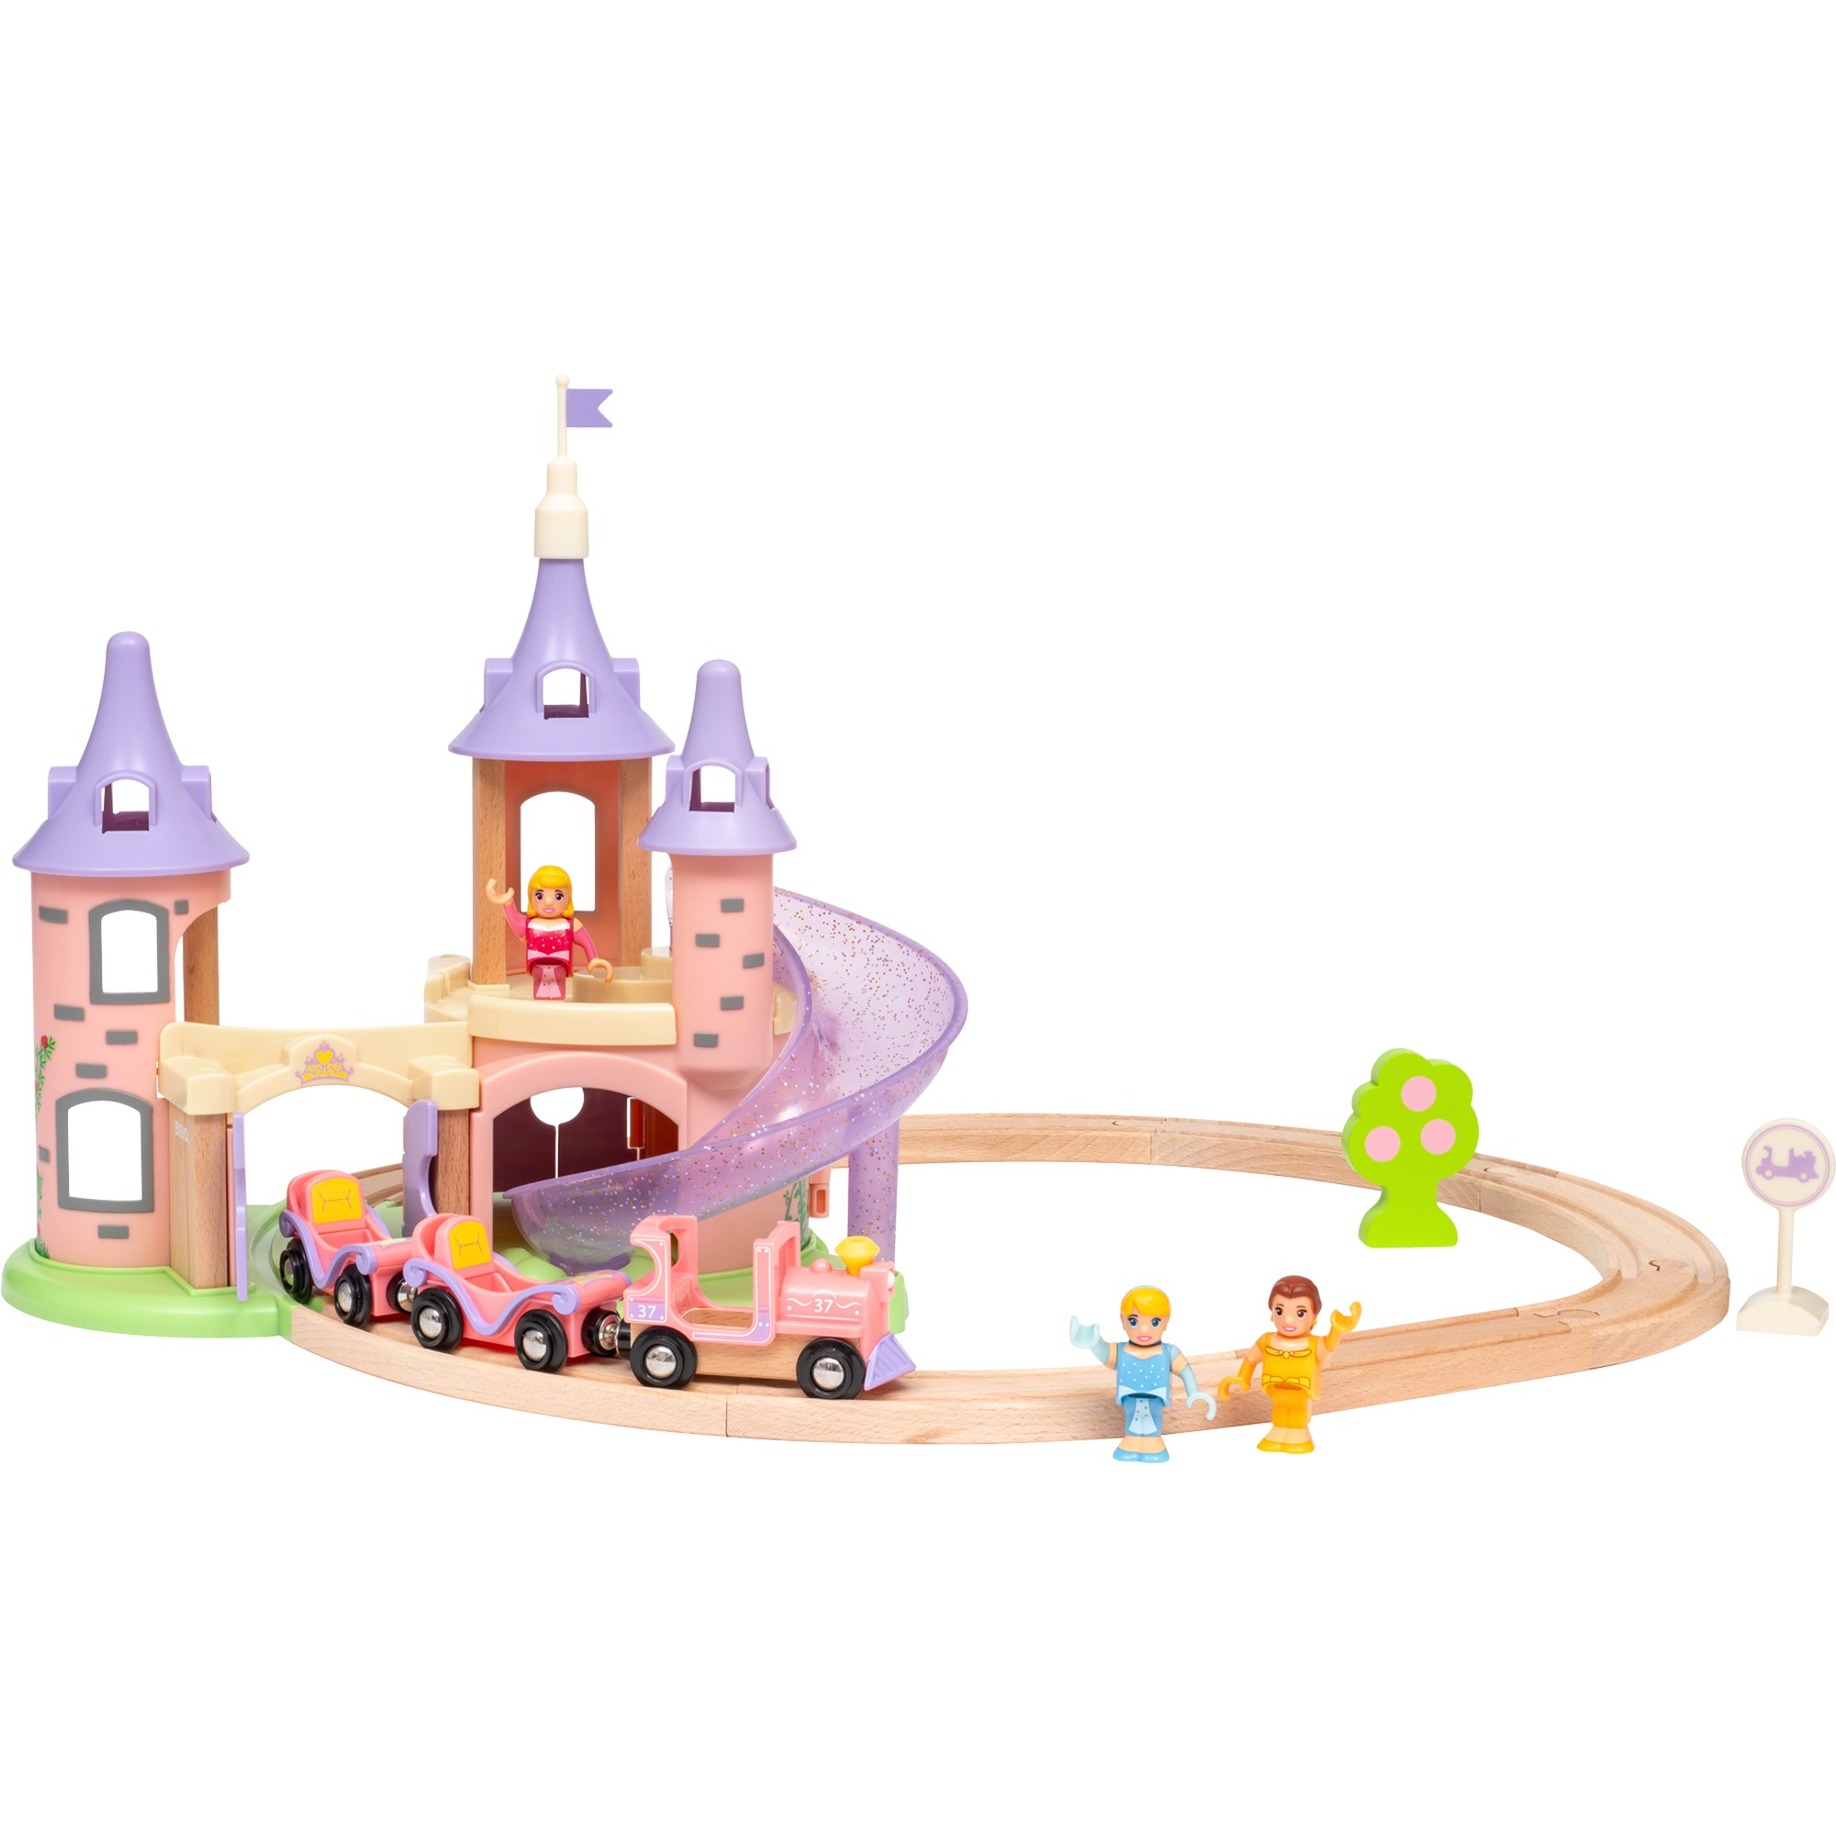 Image of Alternate - Disney Princess Traumschloss Eisenbahn-Set online einkaufen bei Alternate